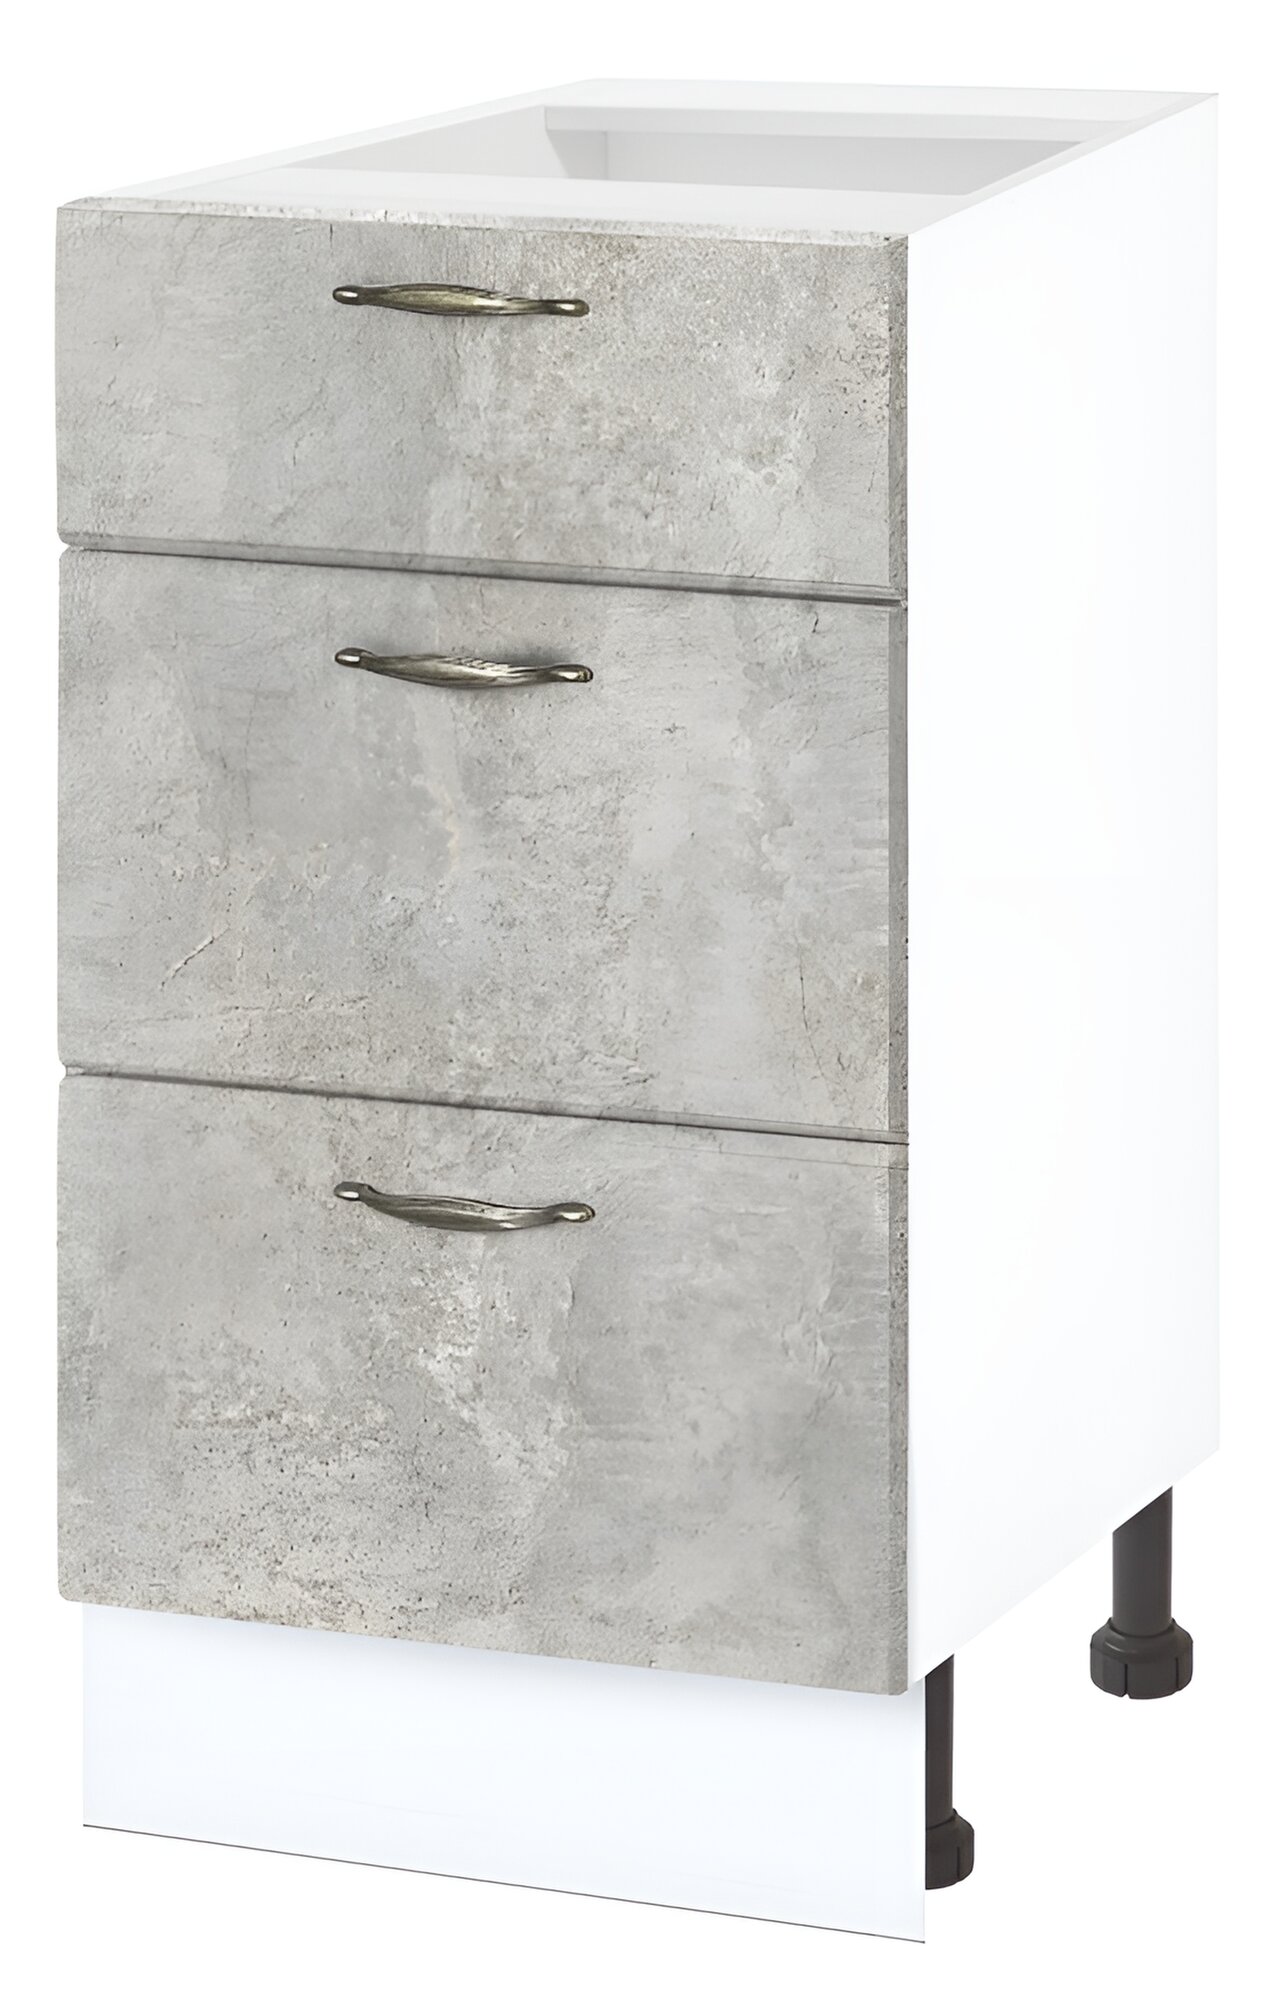 Шкаф кухонный напольный с ящиками без столешницы, Полюс 40 см, ЛДСП серый